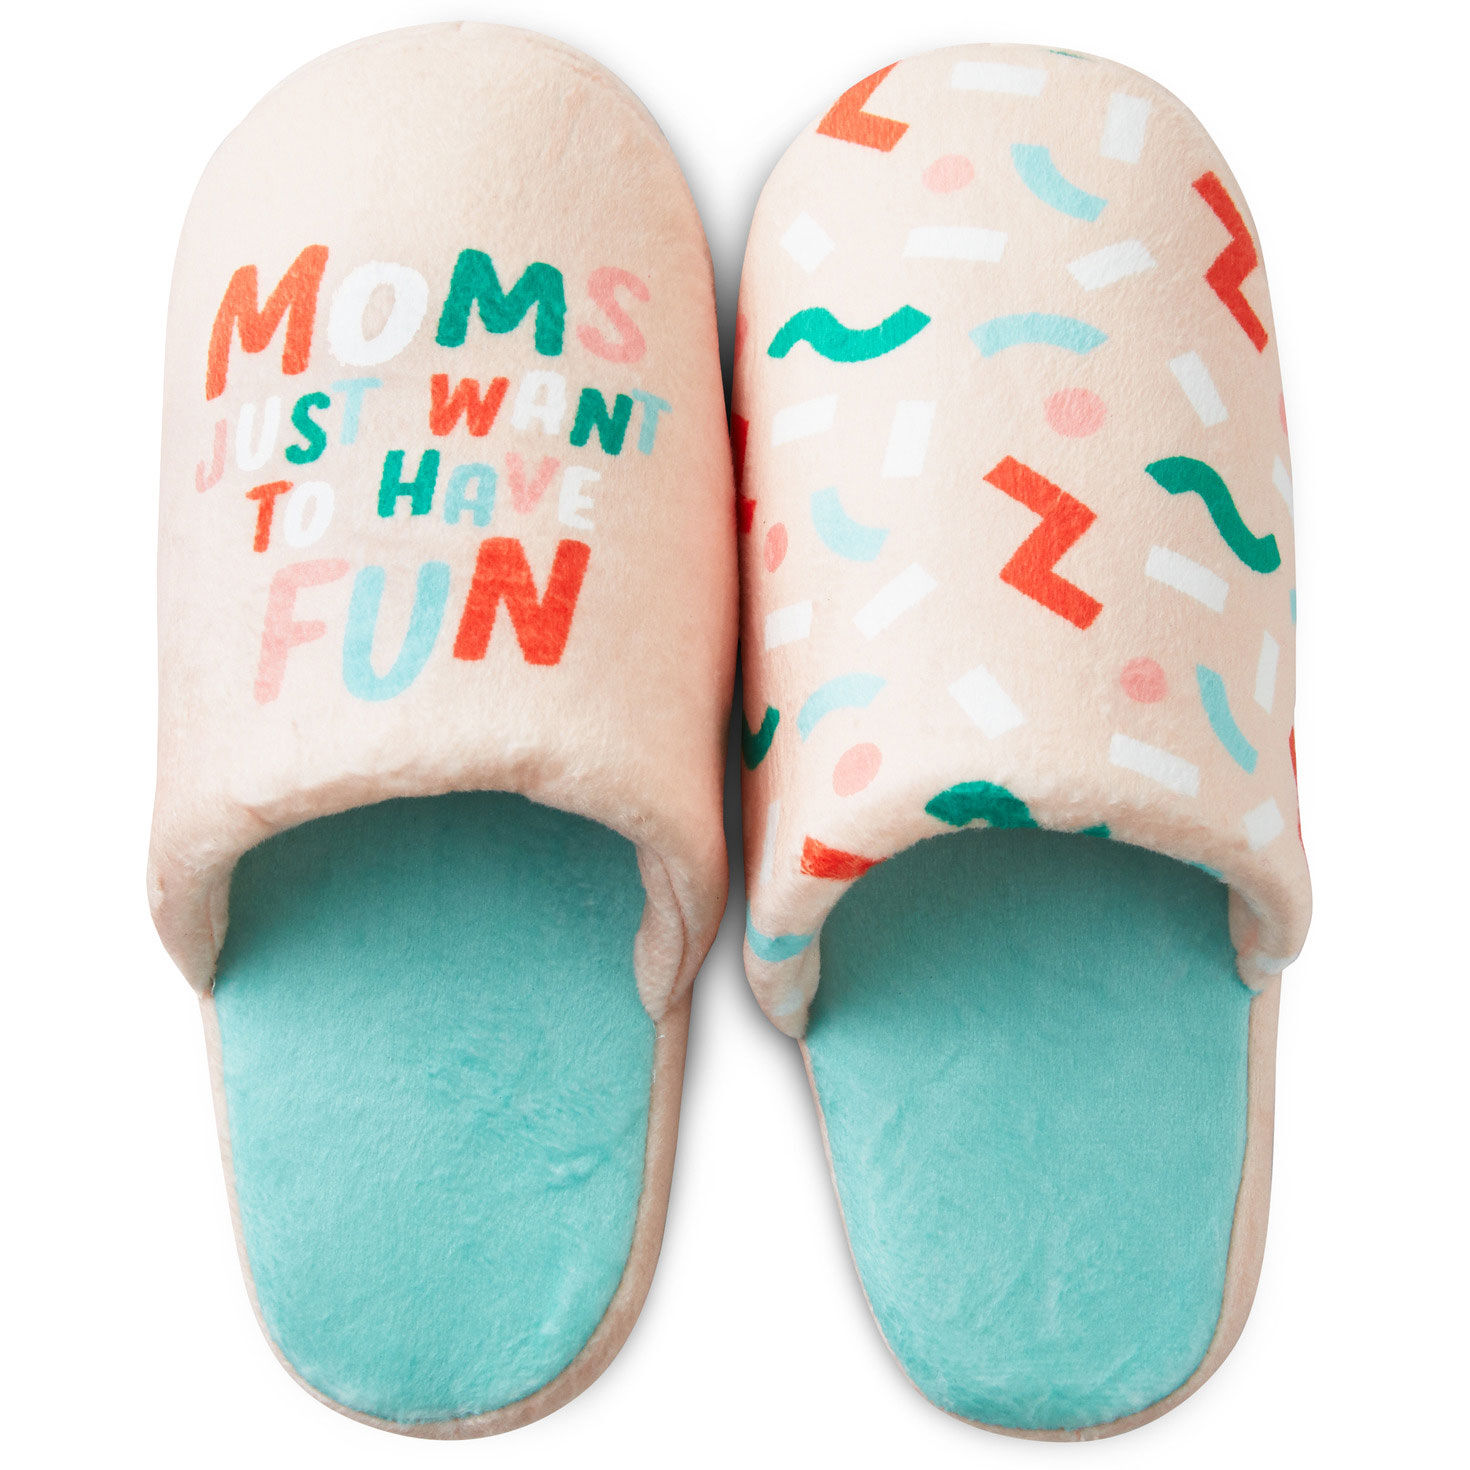 mild krone kuffert Moms Just Want To Have Fun Slippers With Sound, Small/Medium - Sleep -  Hallmark